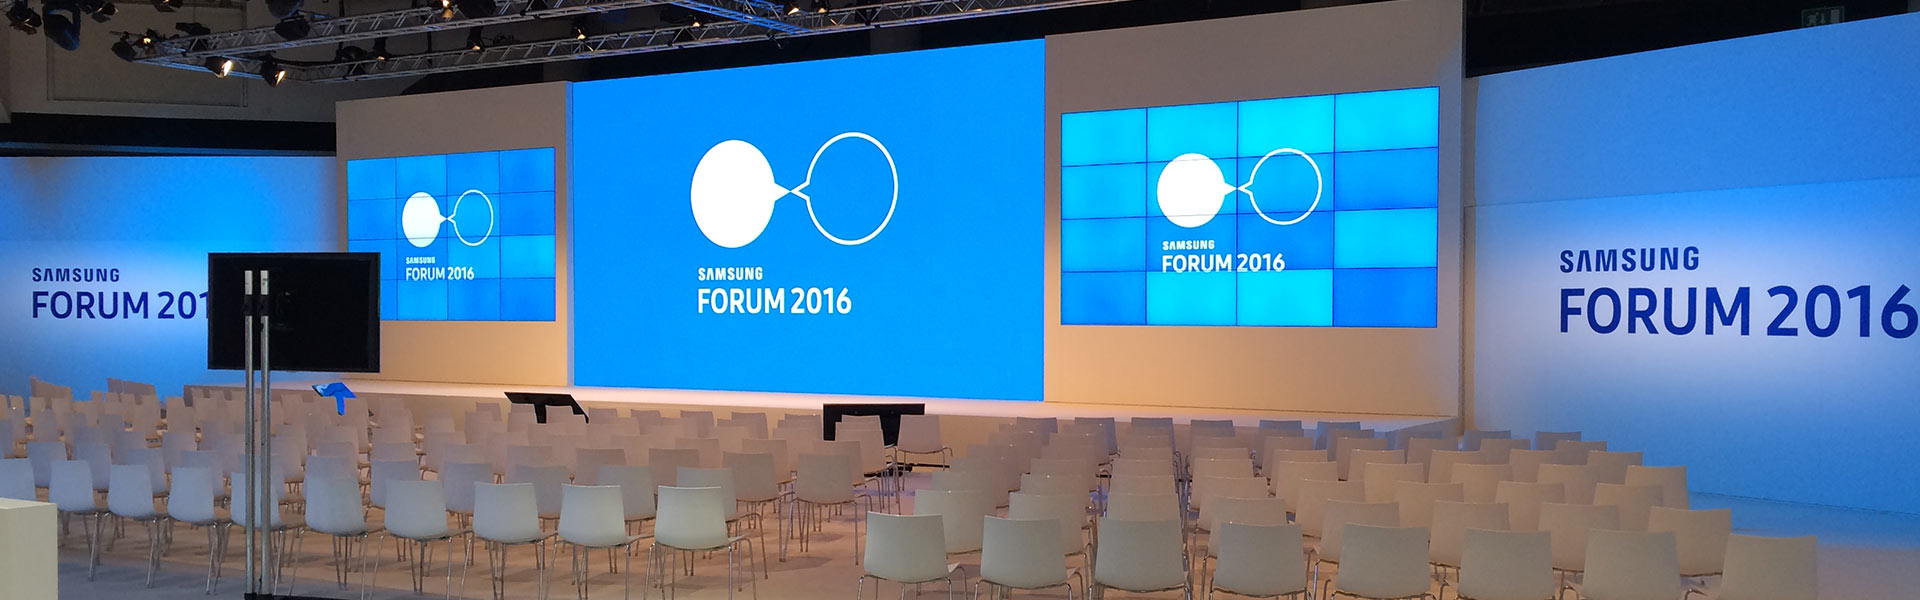 Samsung European Forum 2016 Messe und Konferenzen Szenografie Stage Design